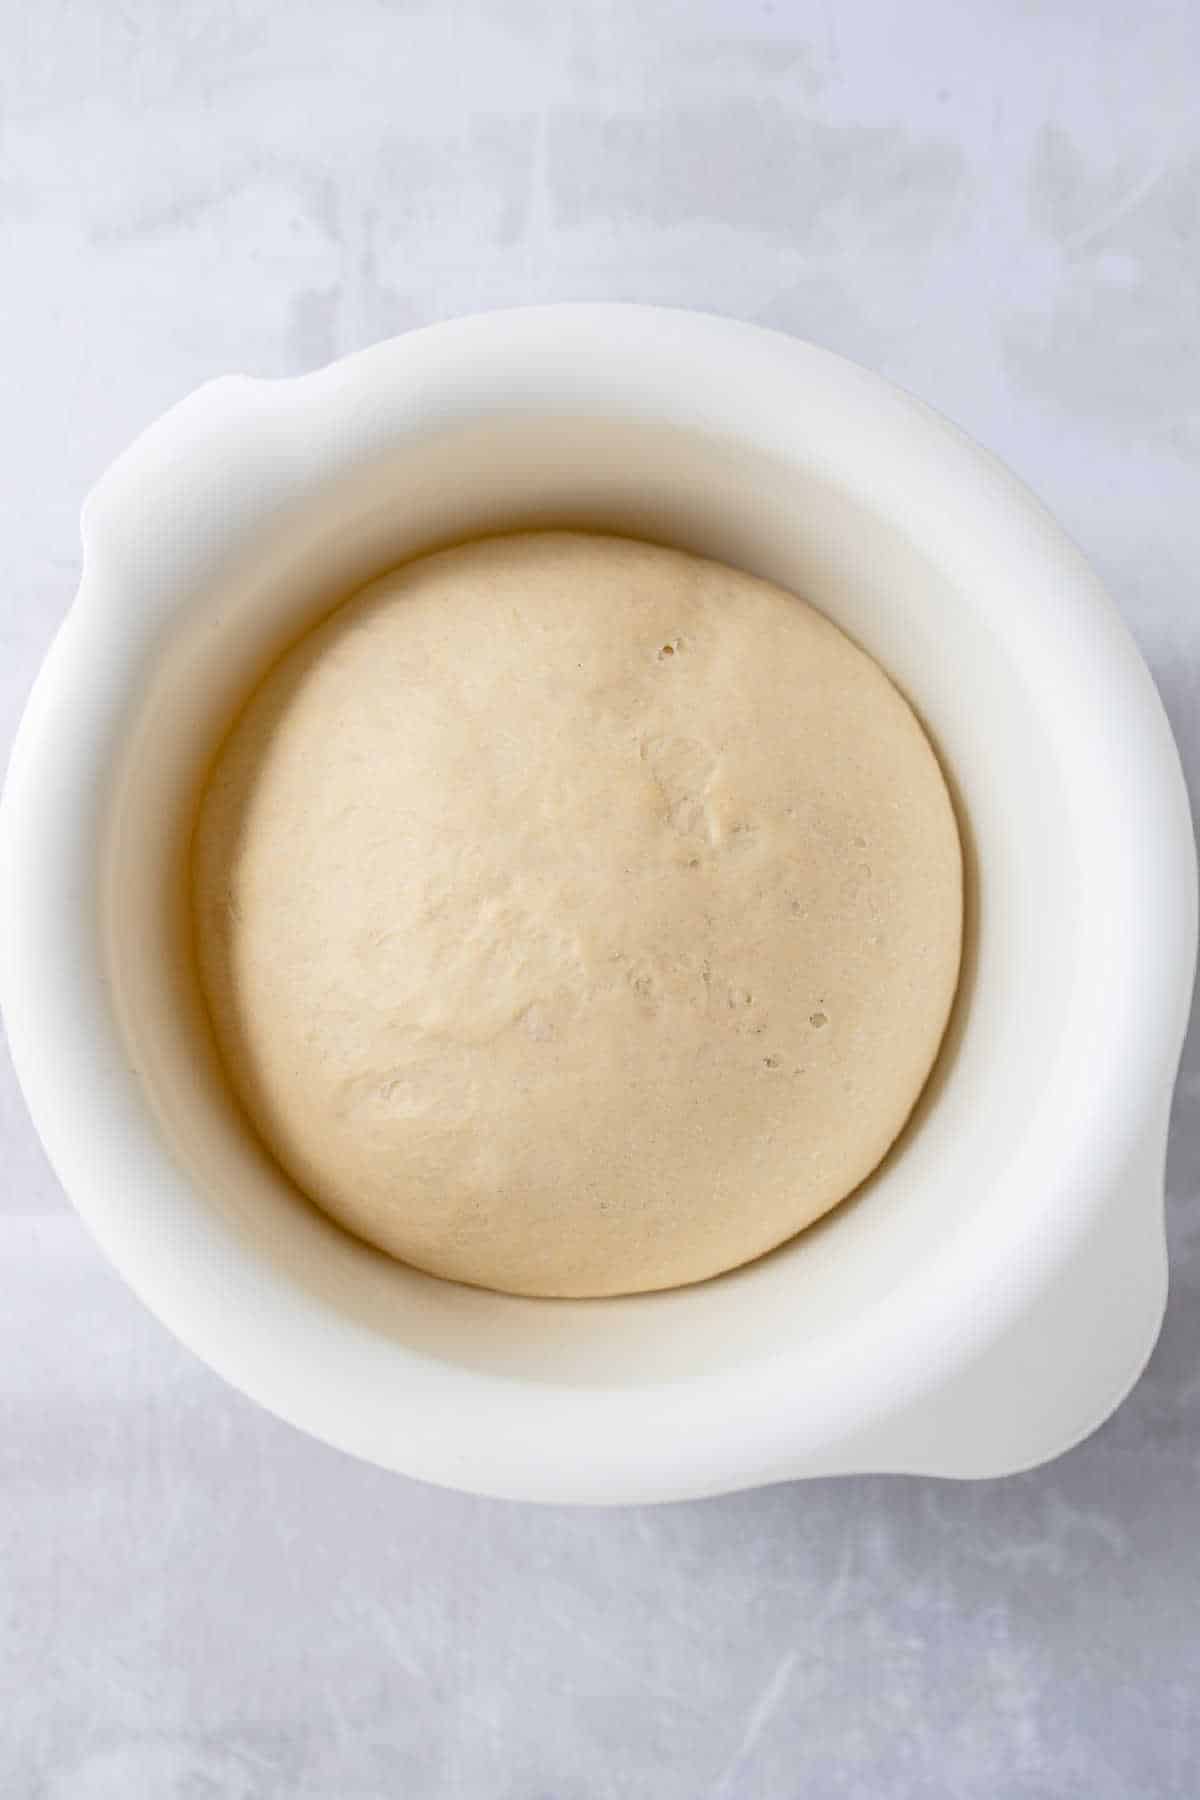 Risen dough in a white mixing bowl. 